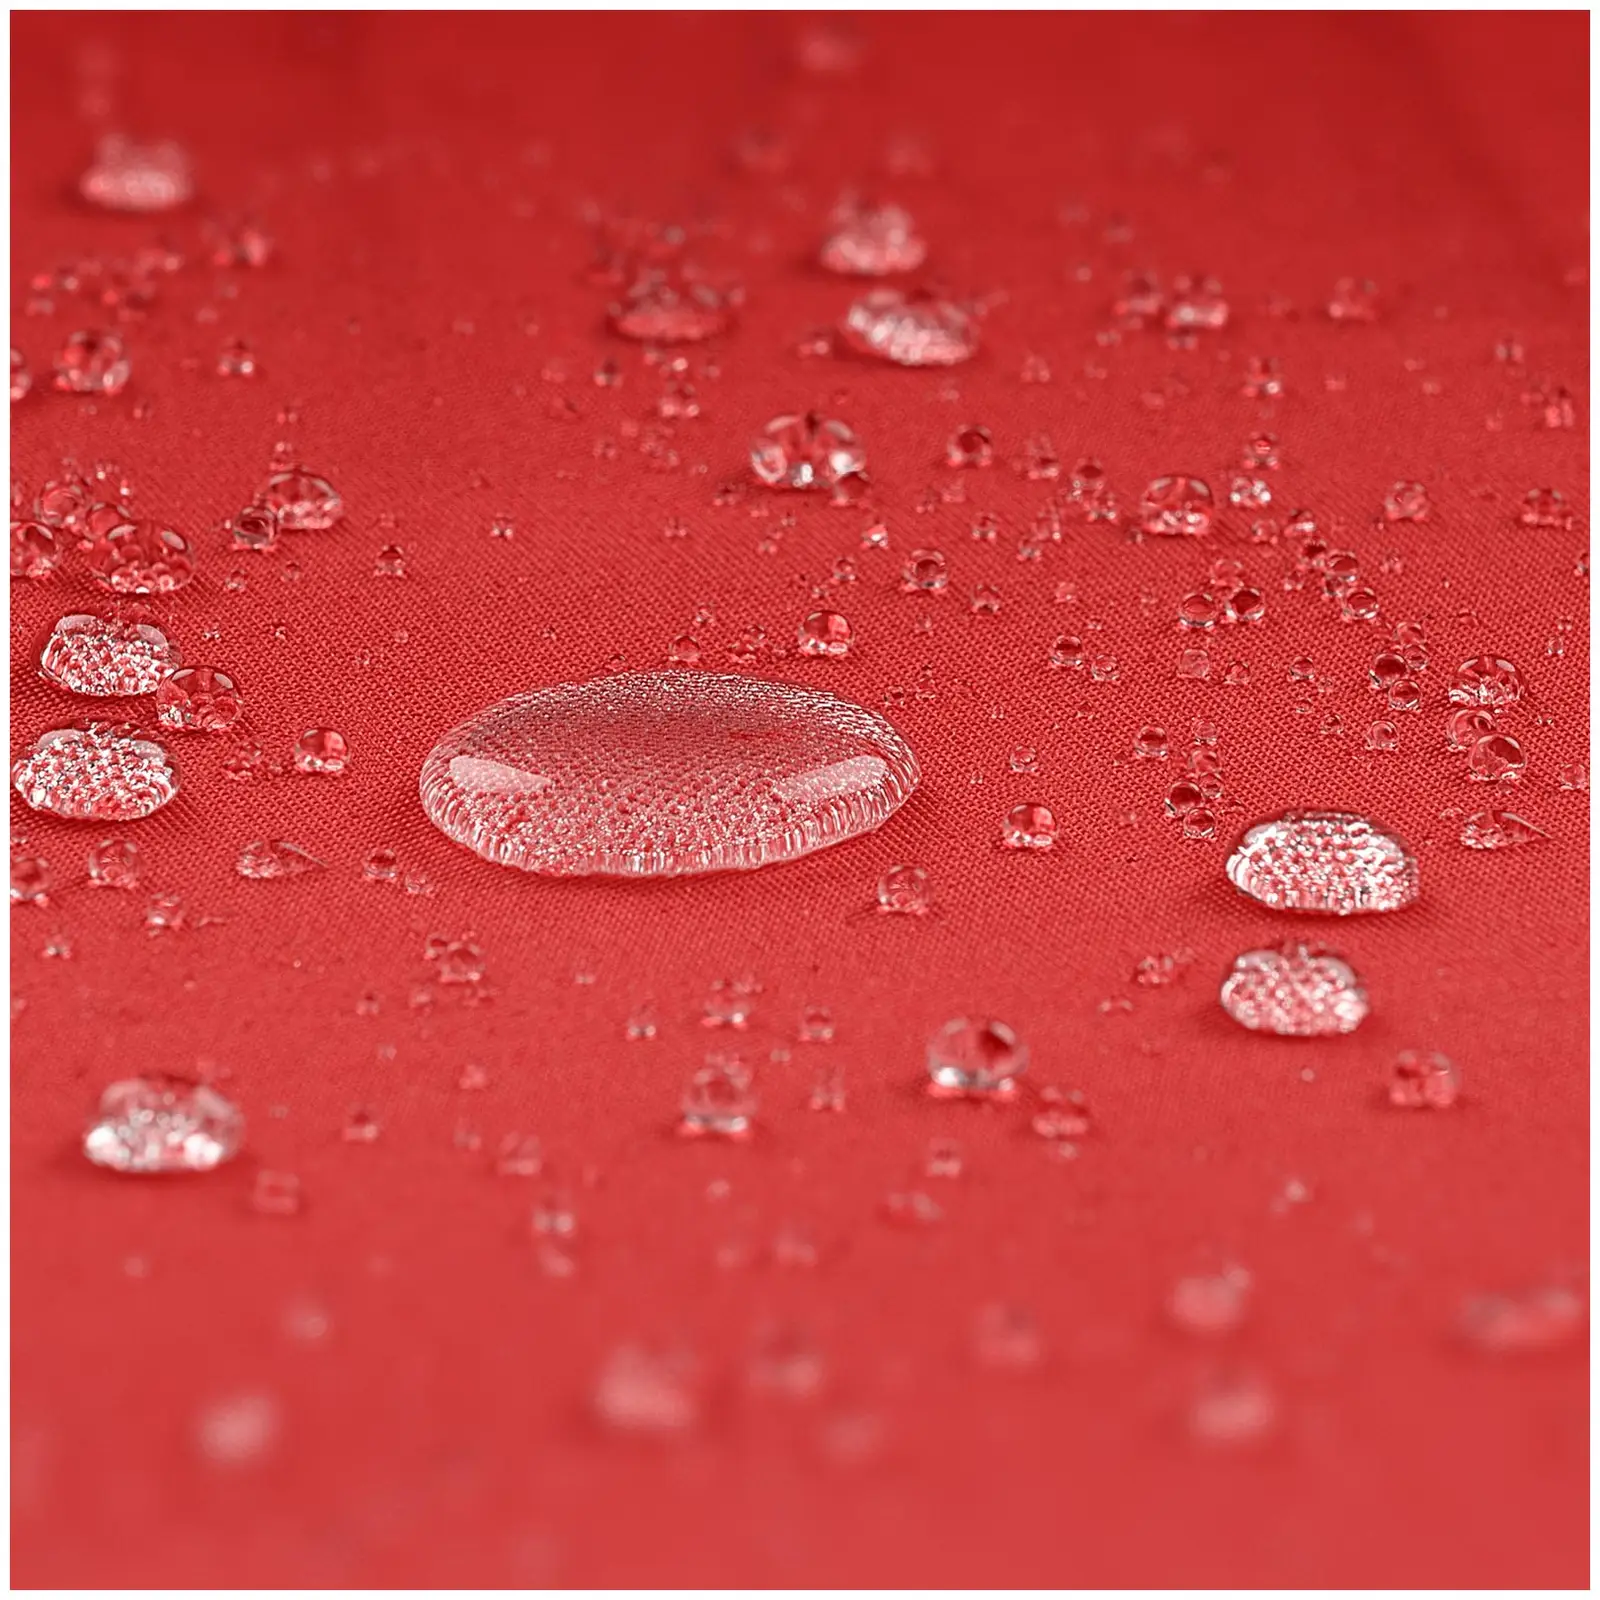 Градински чадър - червен - кръгъл - Ø 300 см - накланящ се